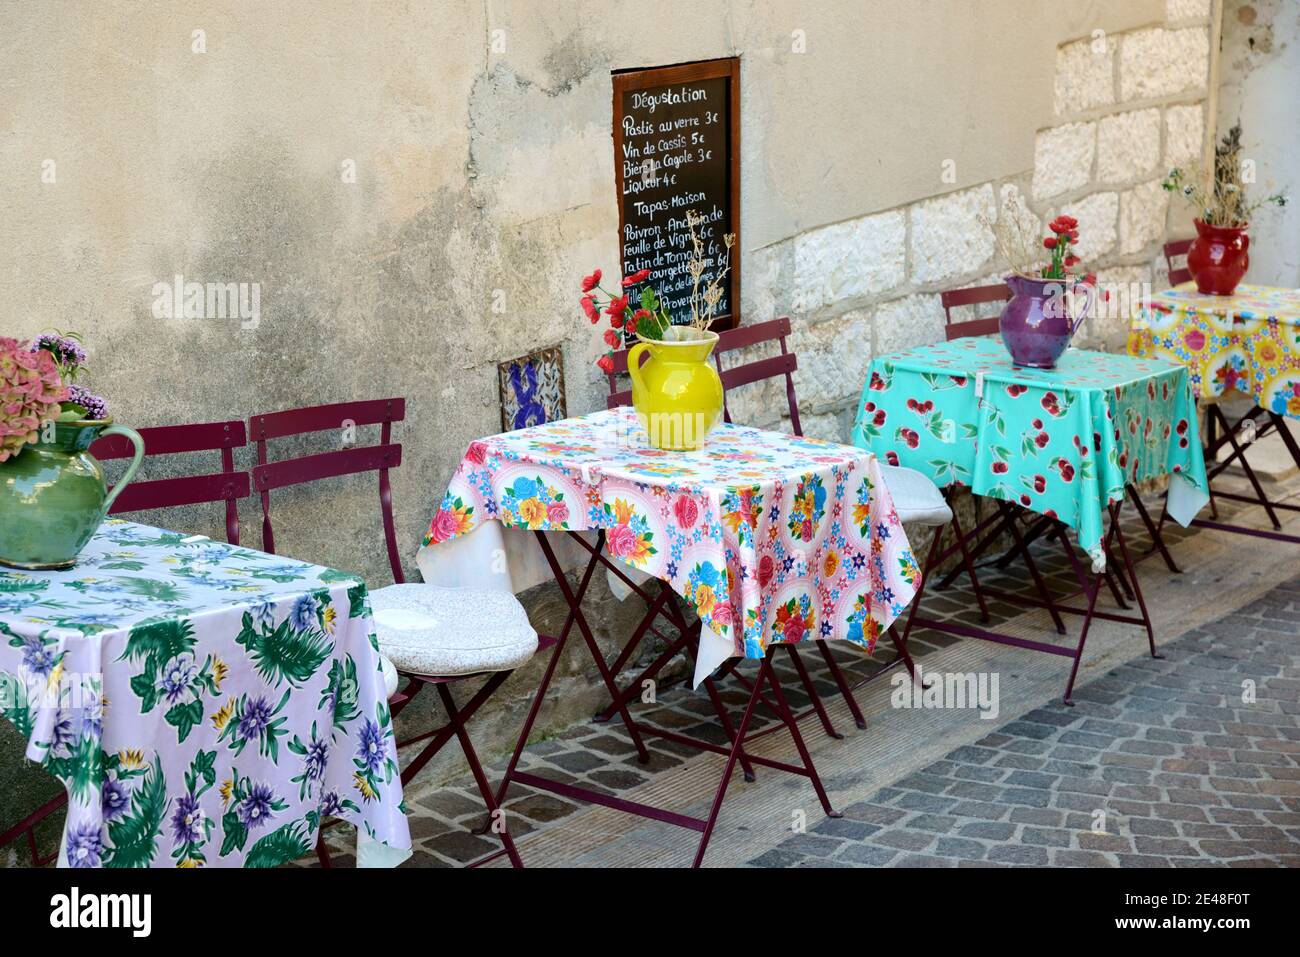 Restaurant extérieur avec tables préparées avec des nappes provençales crues Vases et fleurs à Cassis Provence France Banque D'Images